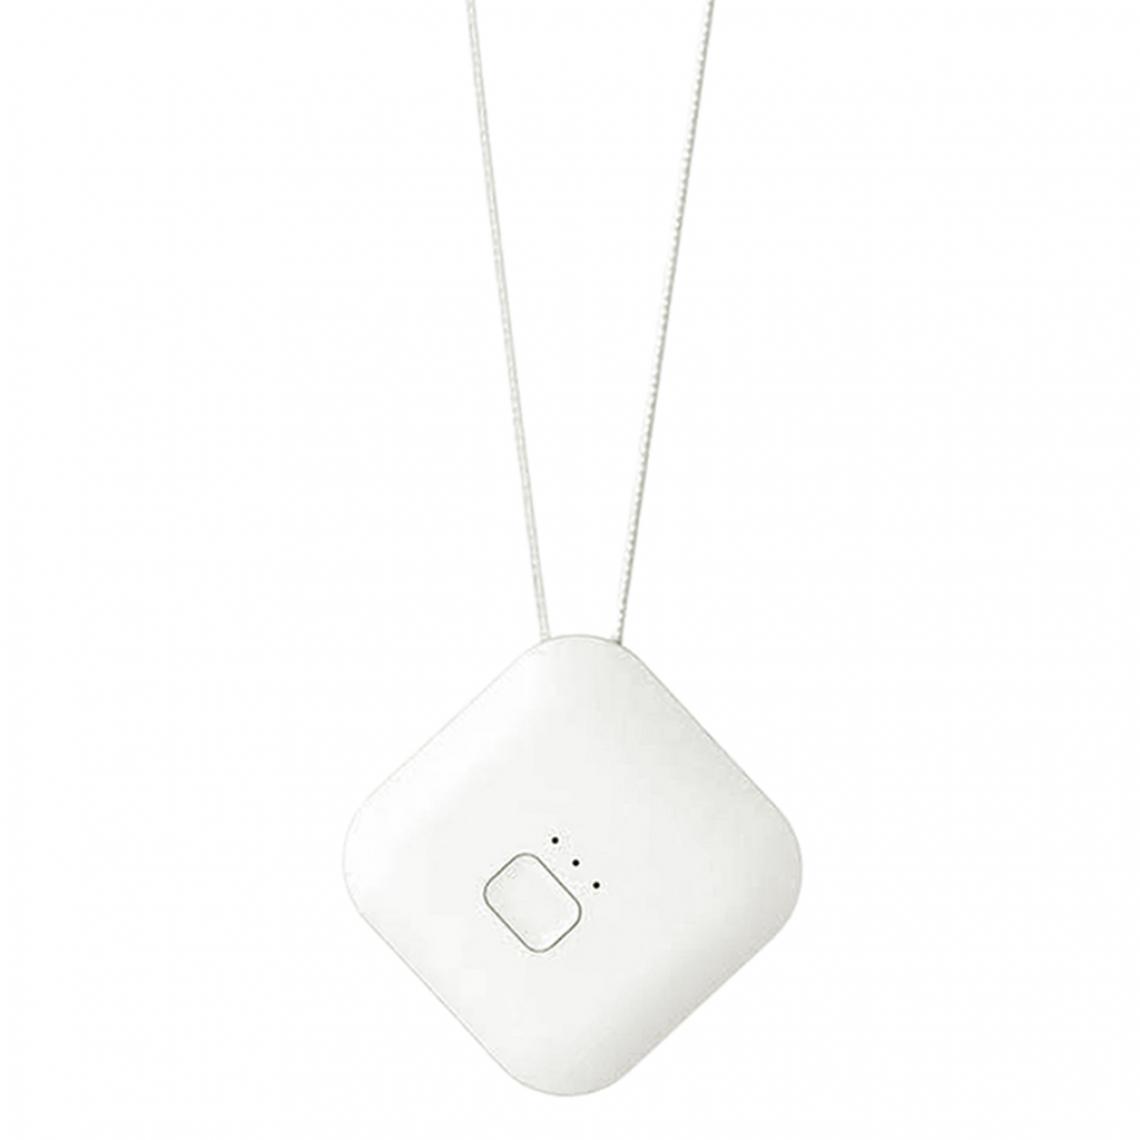 marque generique - Mignon USB Chargeant Le Filtre à Air Portatif D'épurateur D'air Blanc - Filtre et accessoires refroidissement